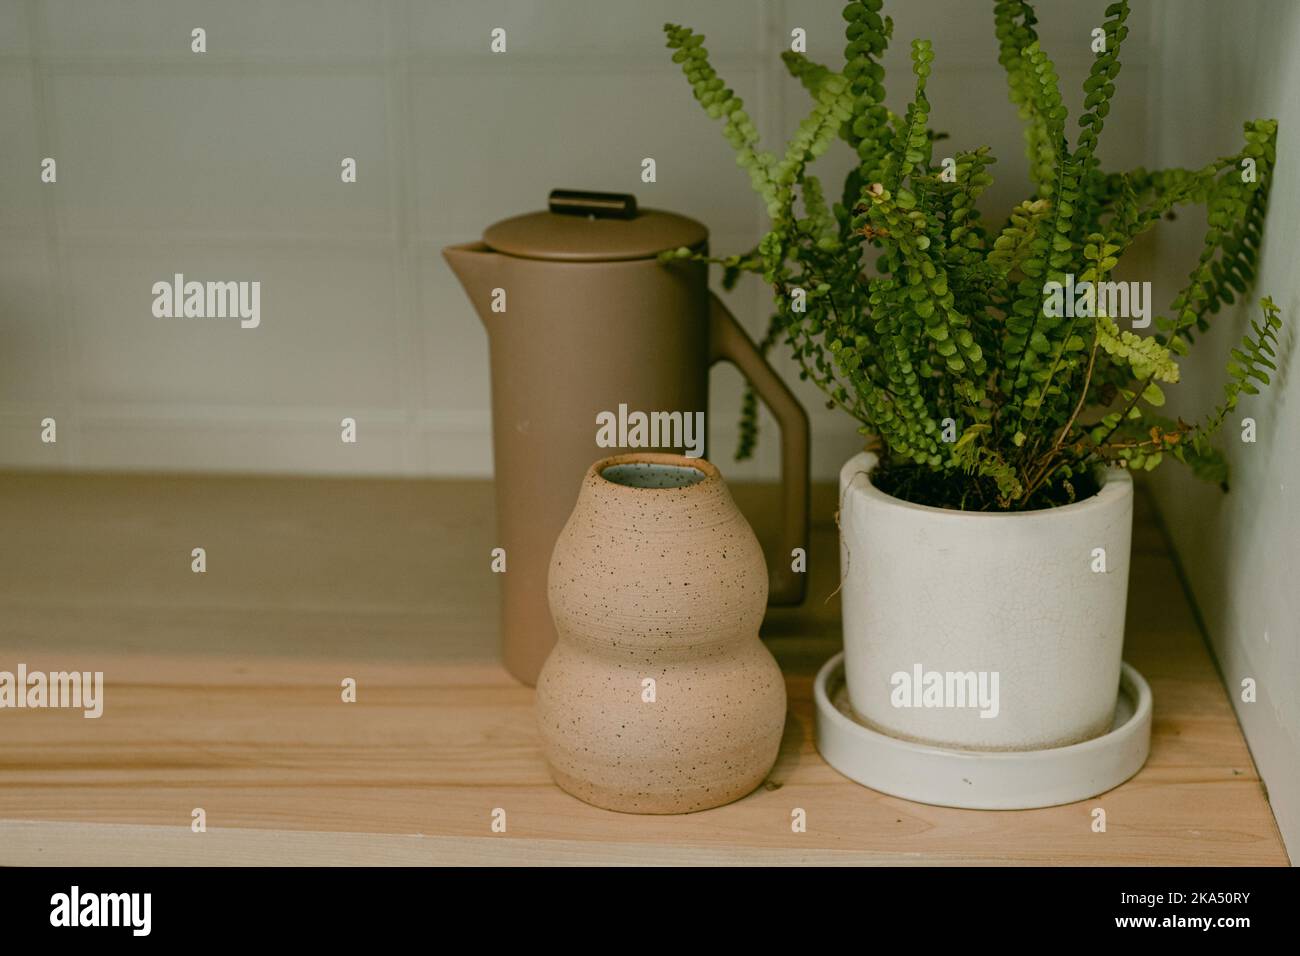 Neutrale Inneneinrichtung mit Vasen und Pflanzen Stockfoto